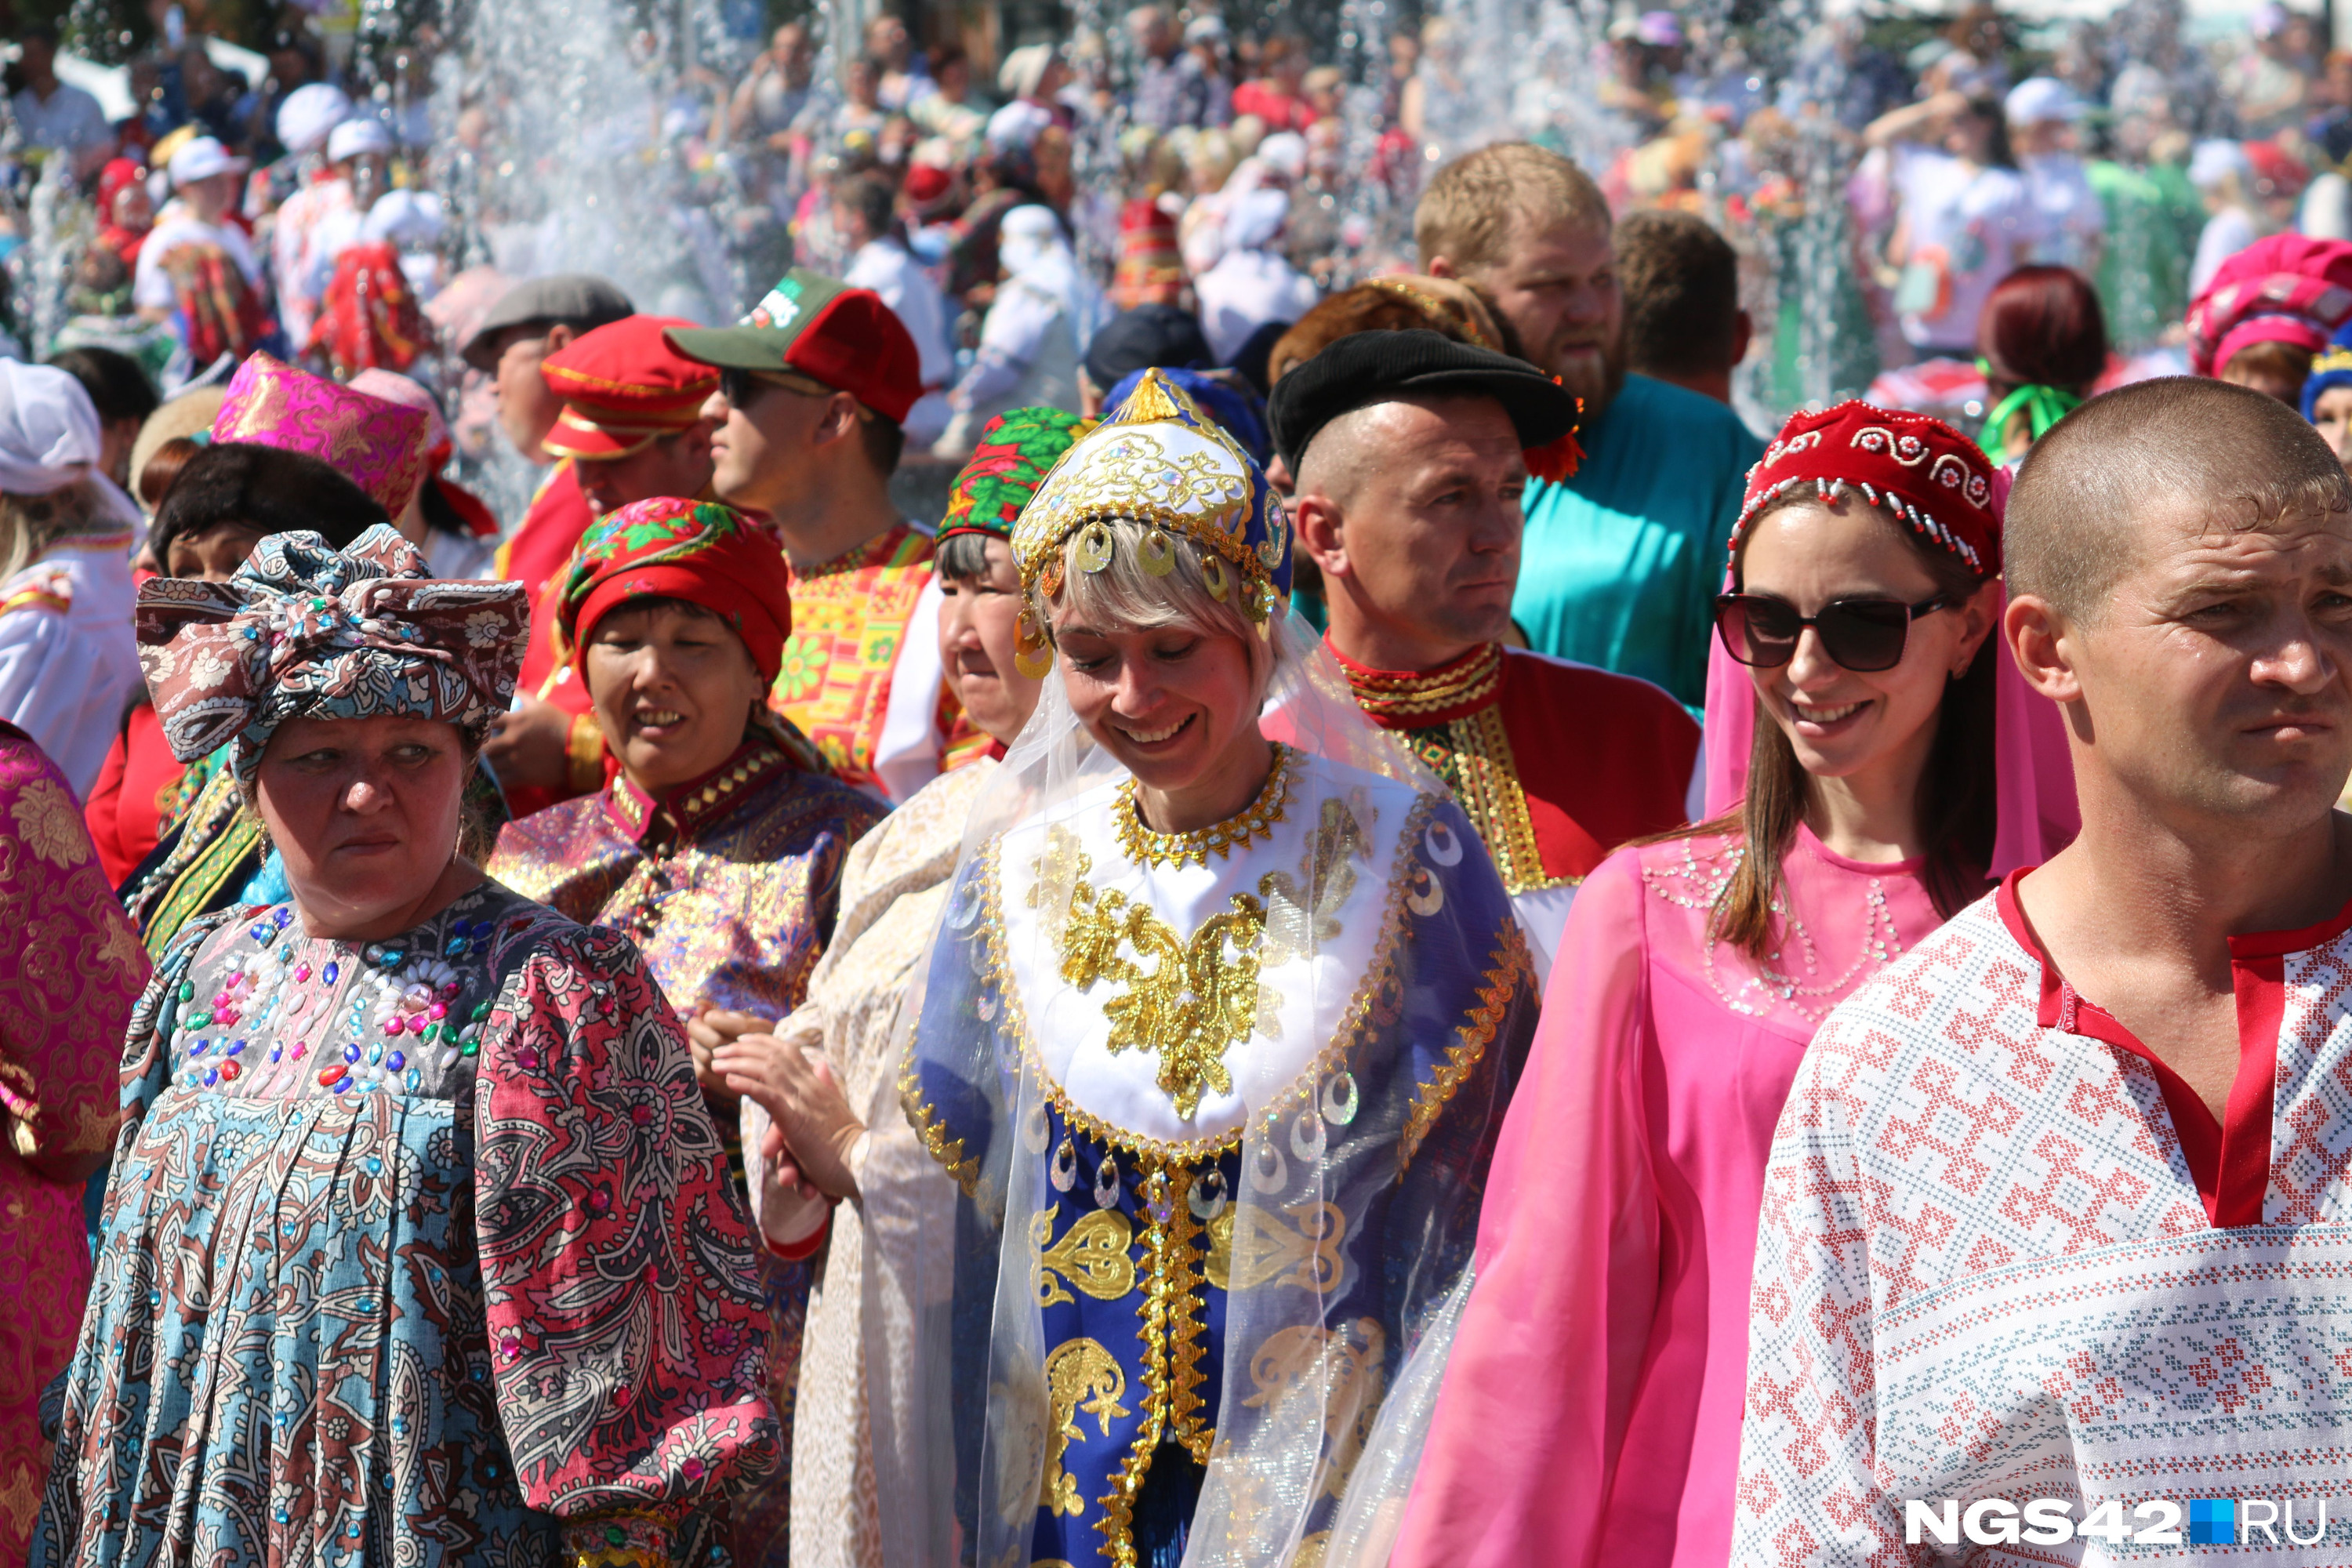 Столько людей в народных костюмах на относительно небольшой территории в Новокузнецке не видели, пожалуй, никогда